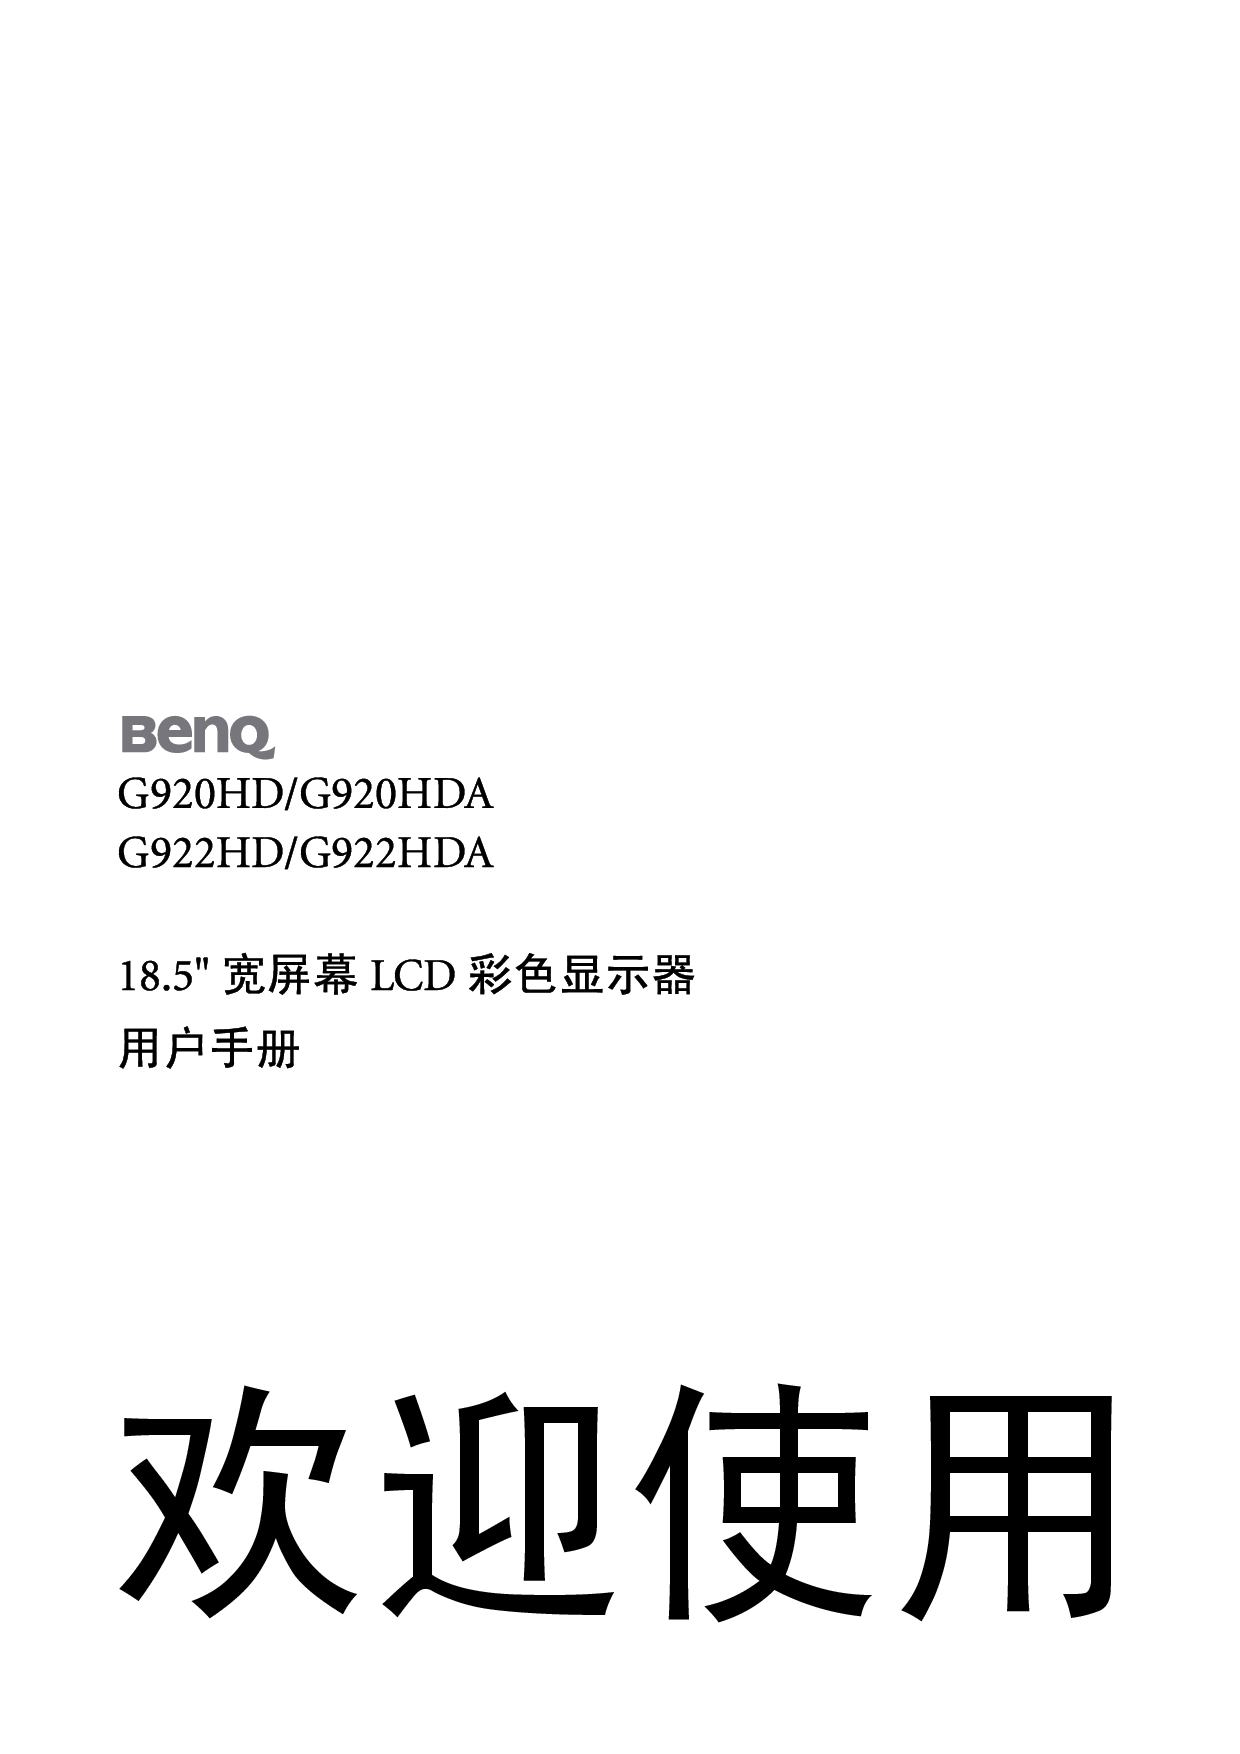 明基 Benq G920HD 使用手册 封面